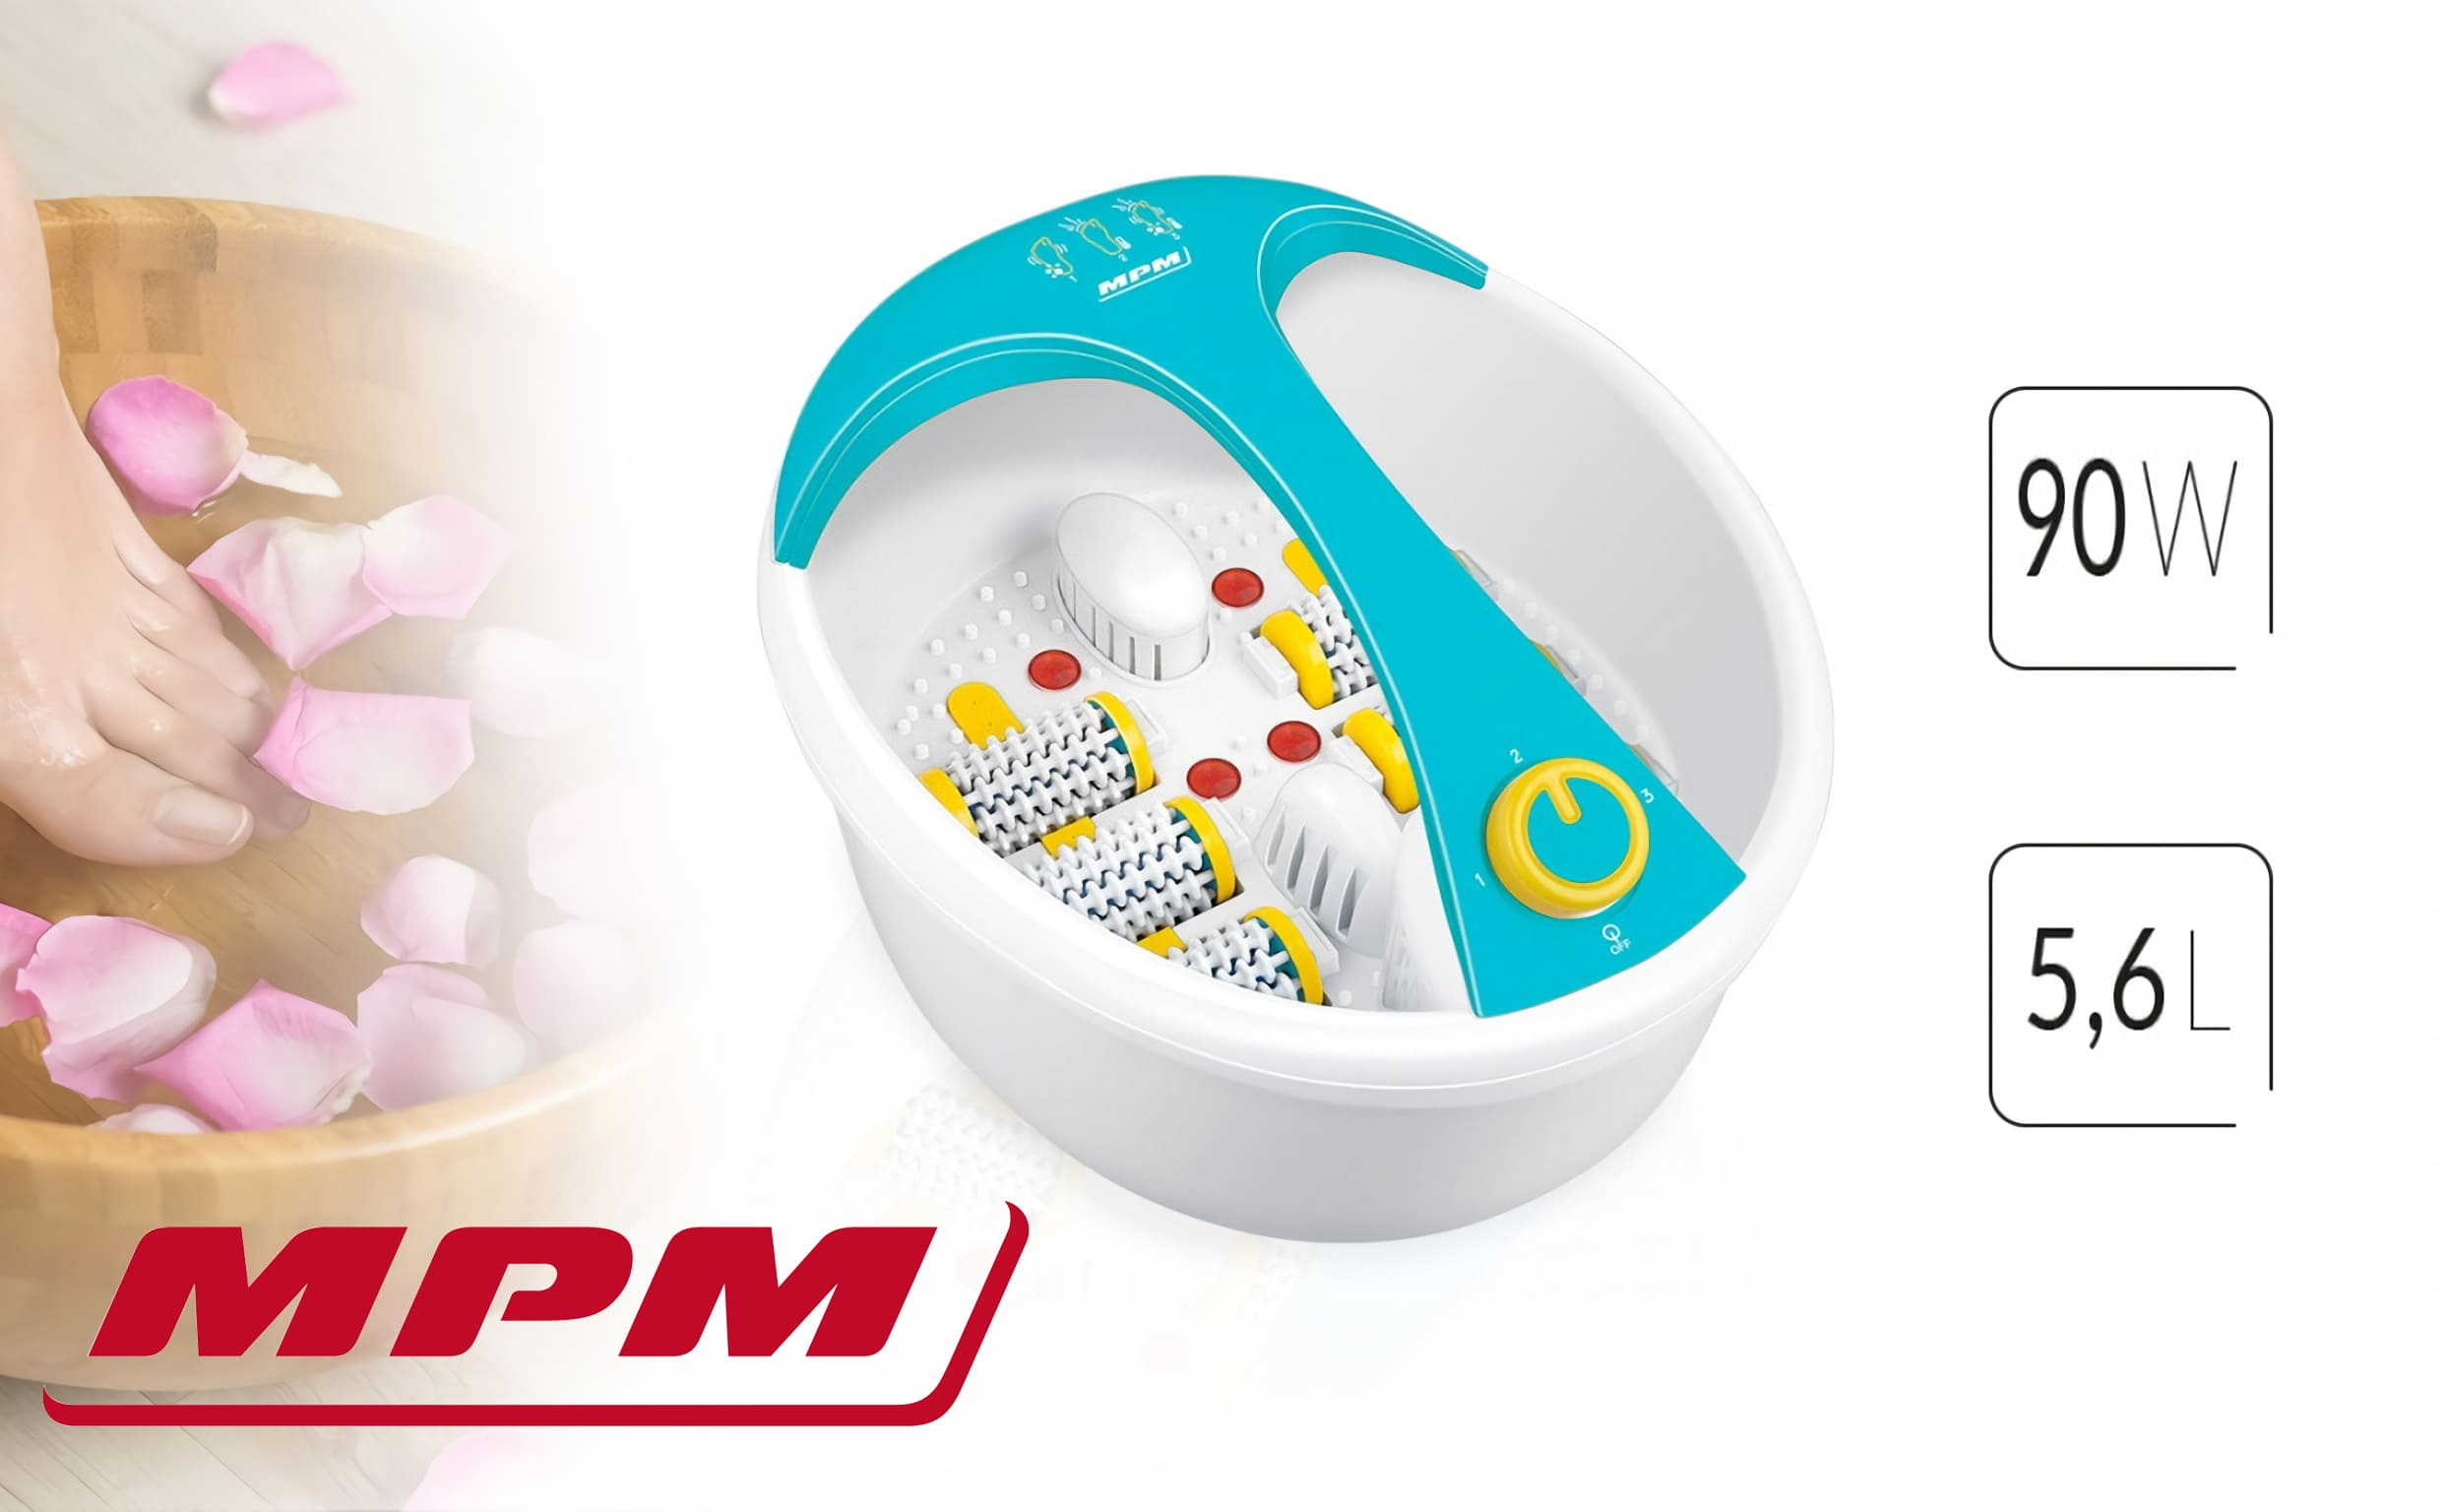 Massagegerät MMS-03 MPM